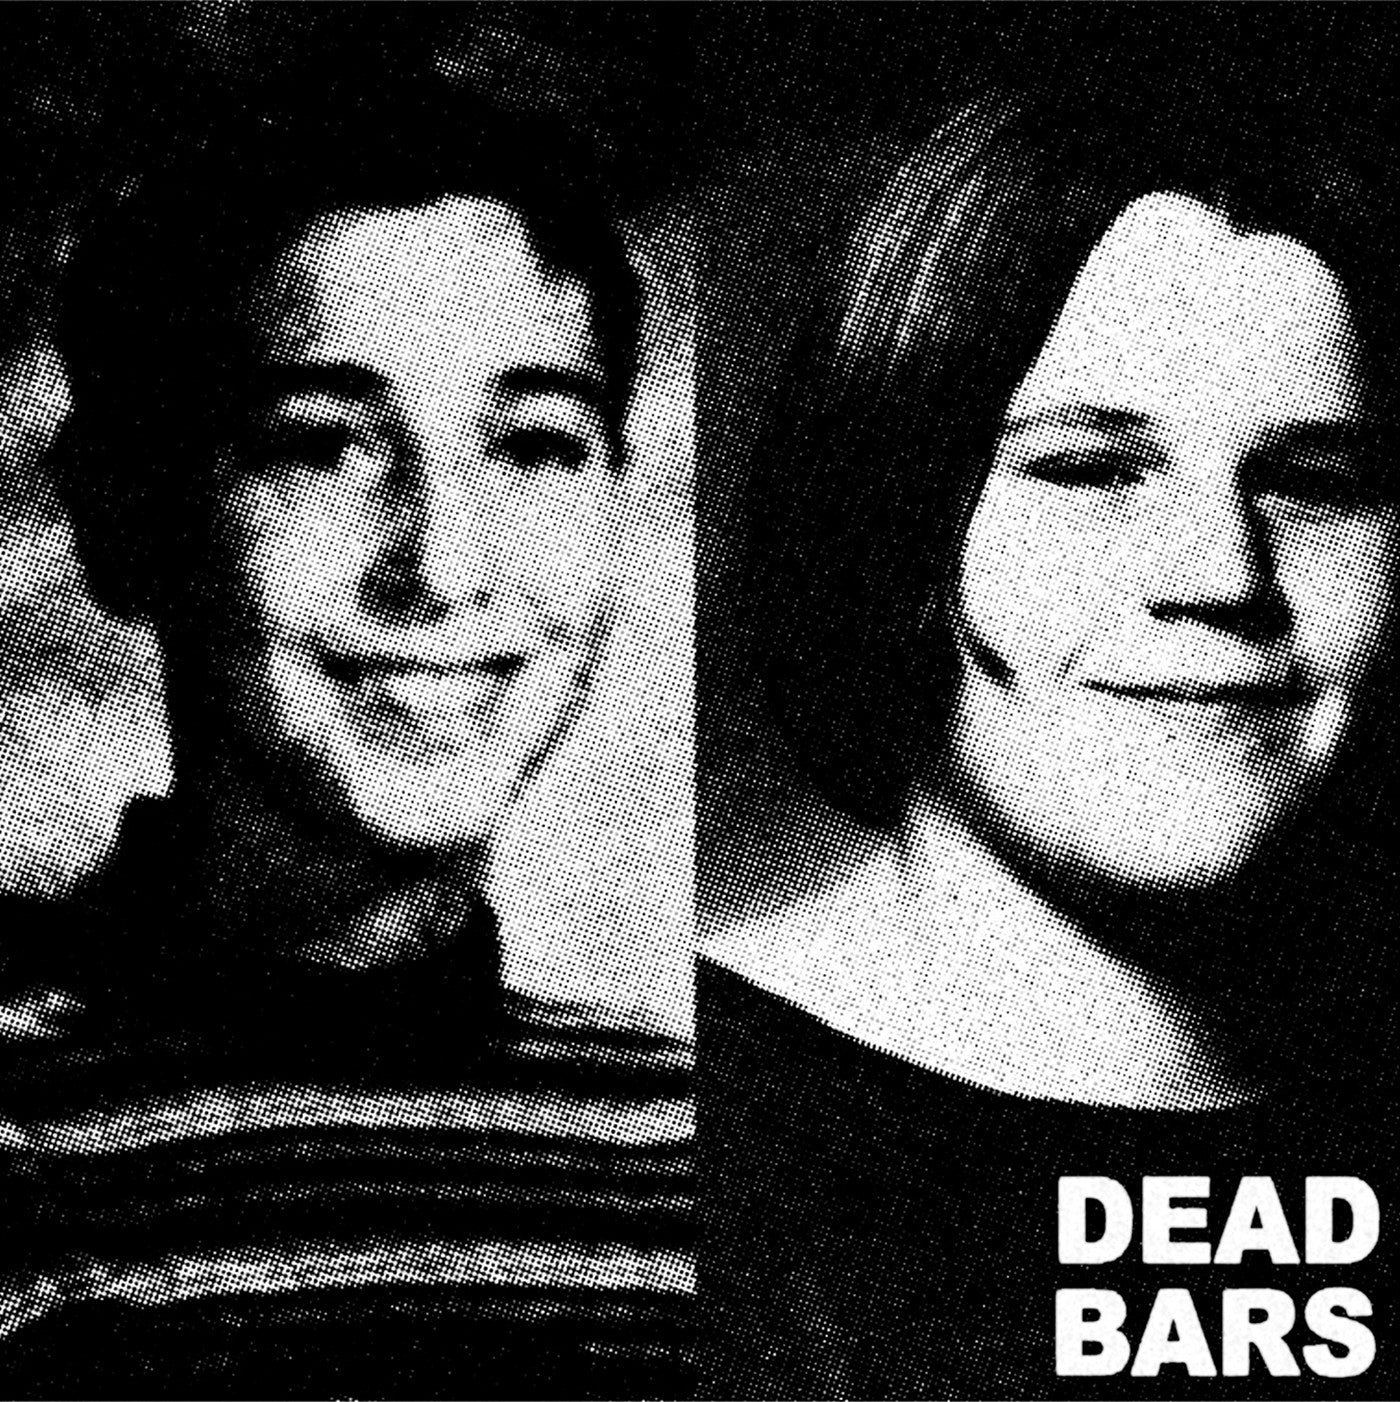 DEAD BARS "Dead Bars"